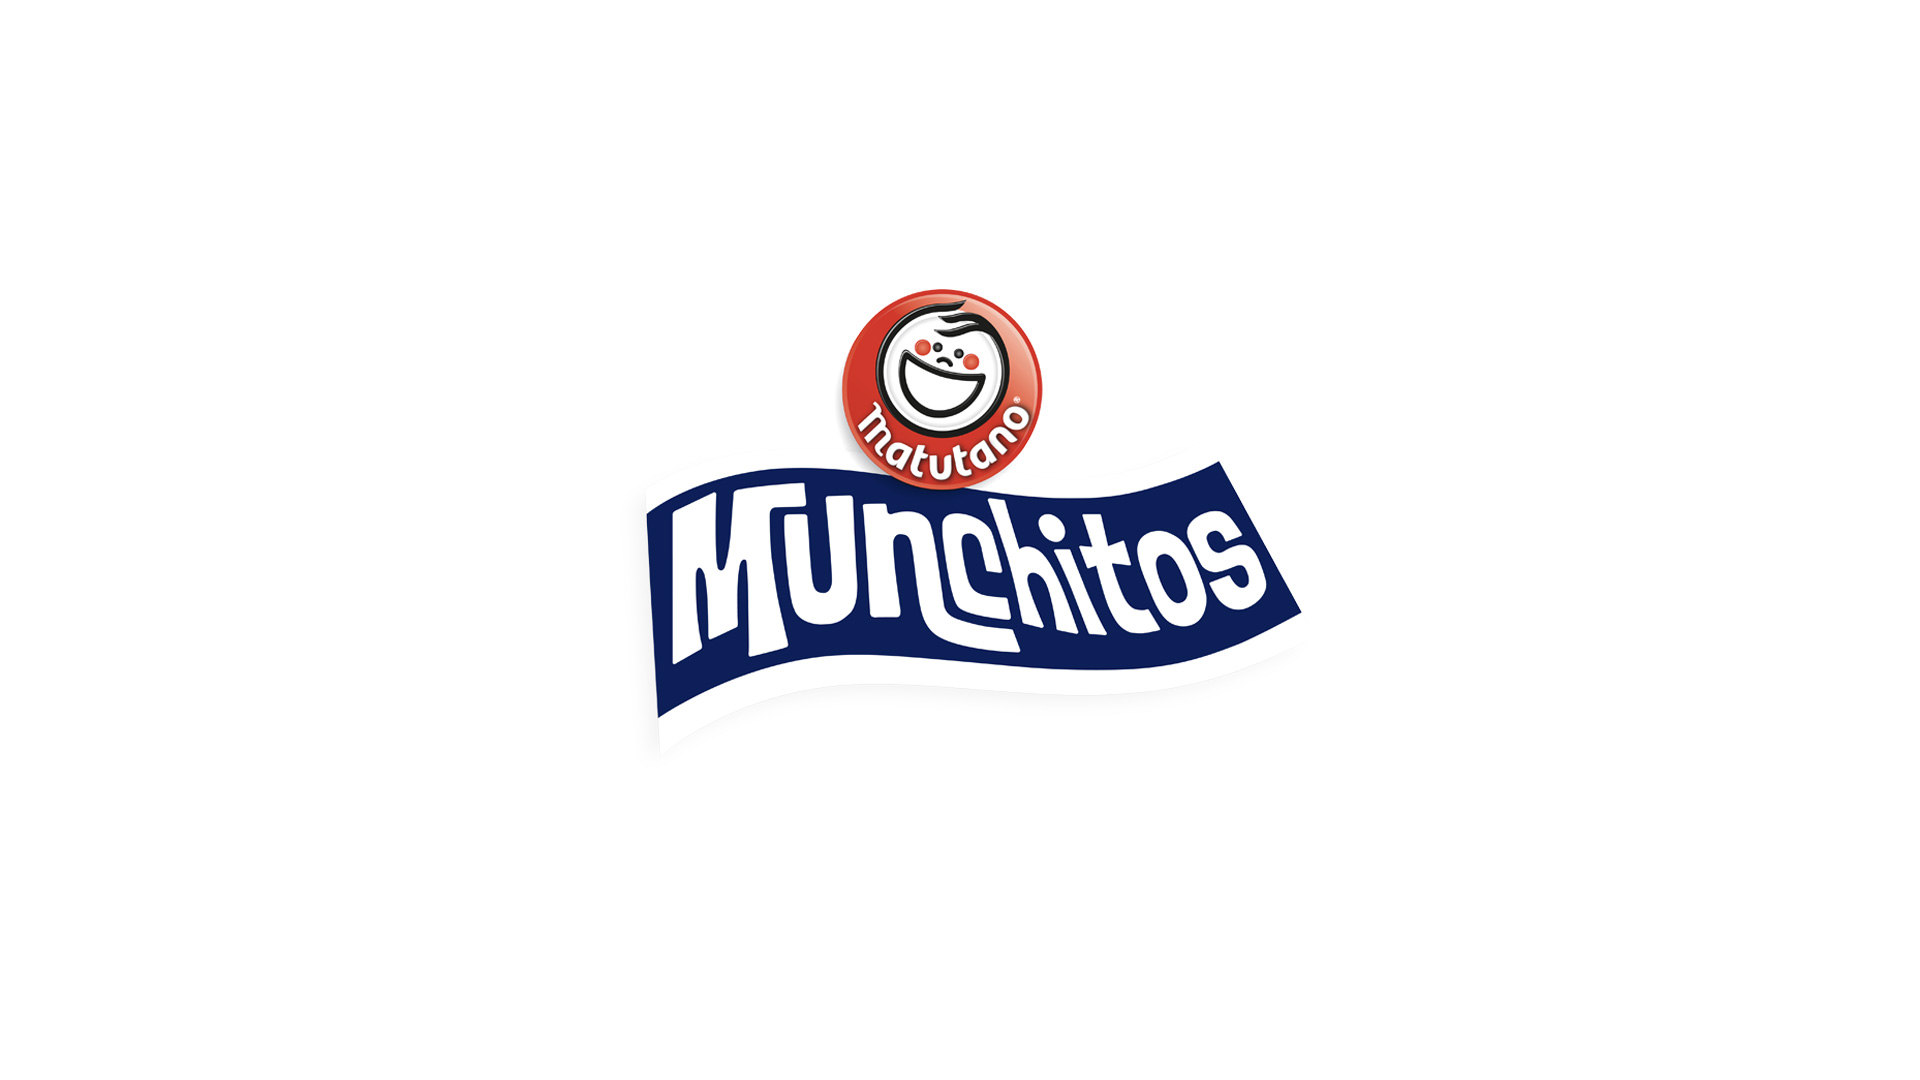 MUNCHITOS_WEB_Munchitos-despues